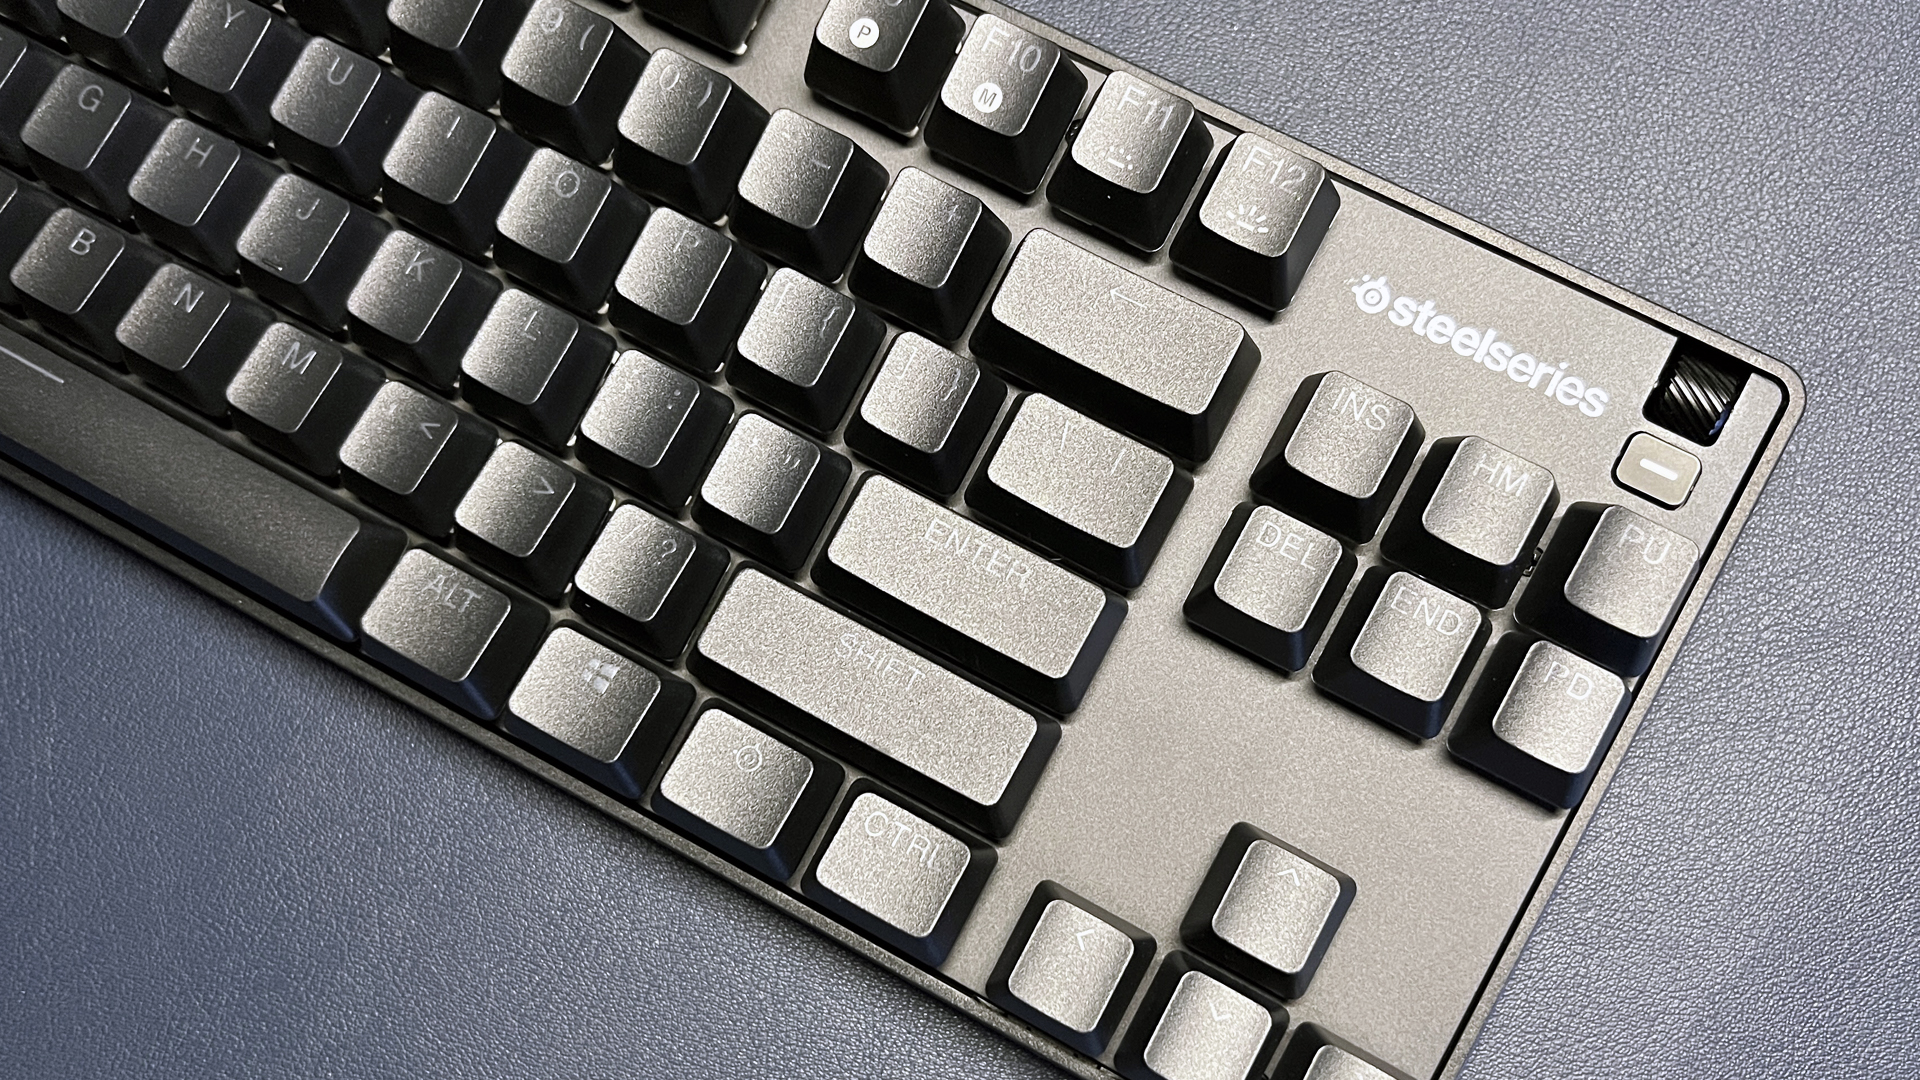 SteelSeries Apex 9 TKL Gaming Keyboard Tenkeyless RGB